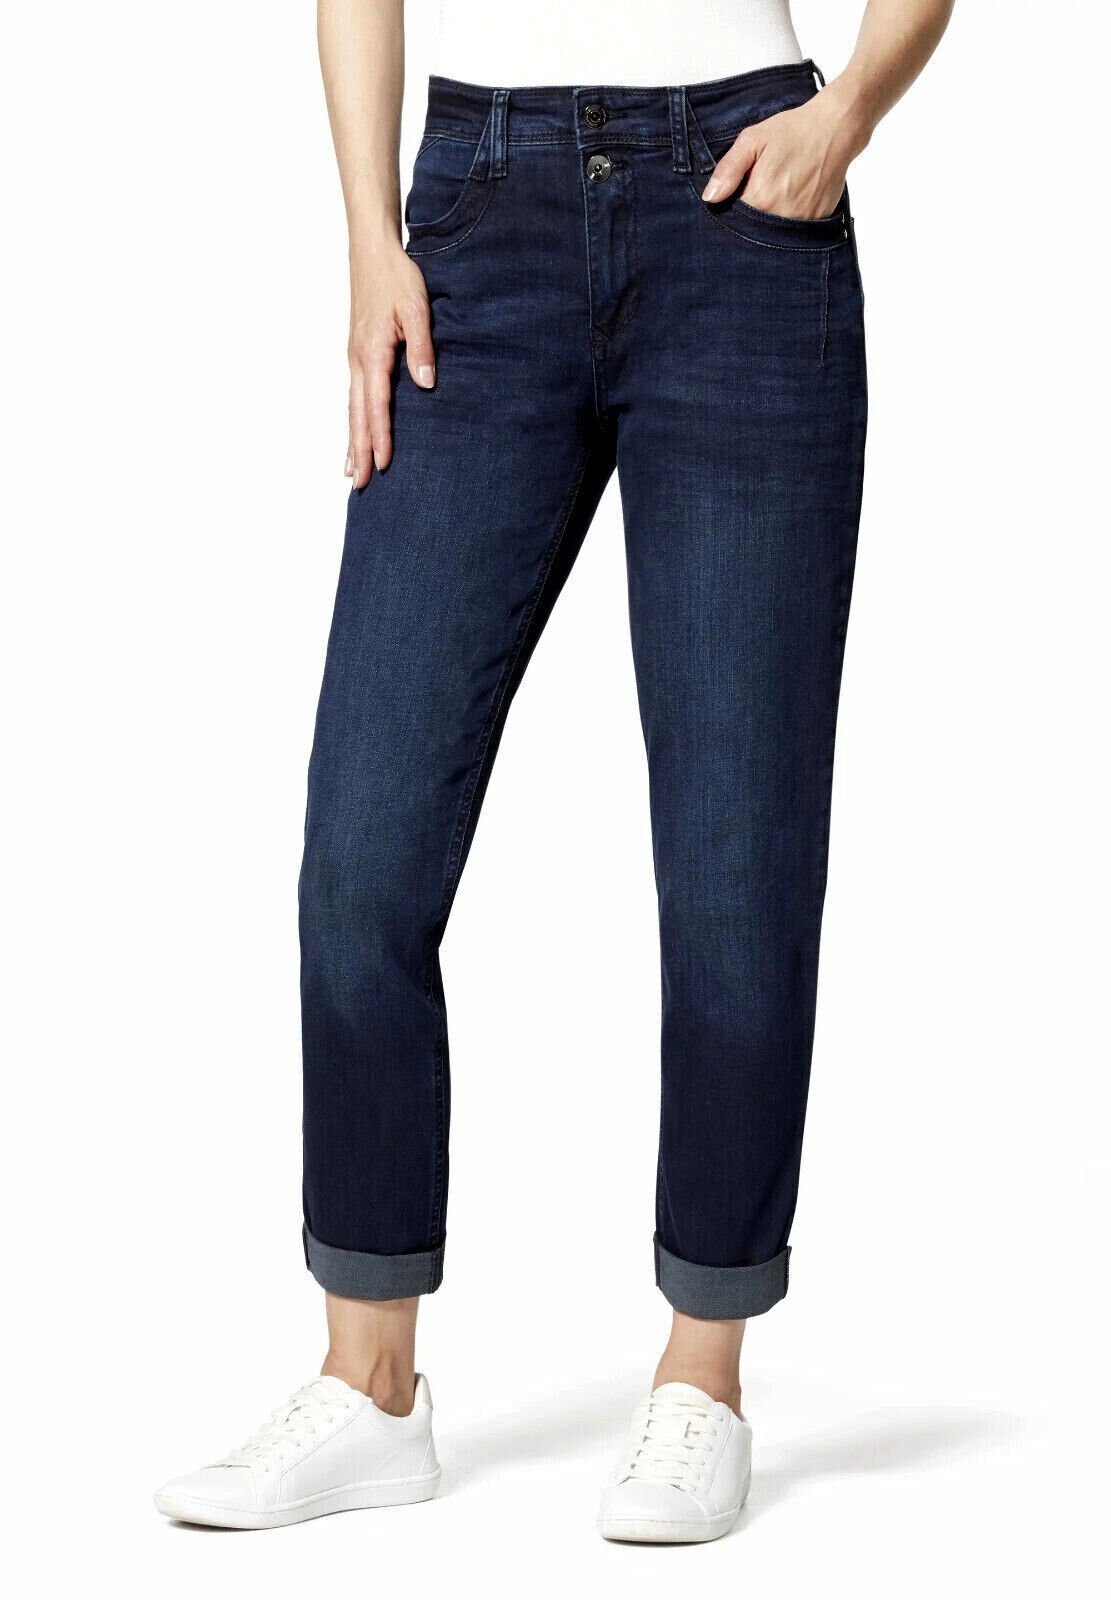 STOOKER WOMEN Boyfriend-Jeans used - FIT DAVOS BOYFRIEND JEANS Blue SLIM HOSE black